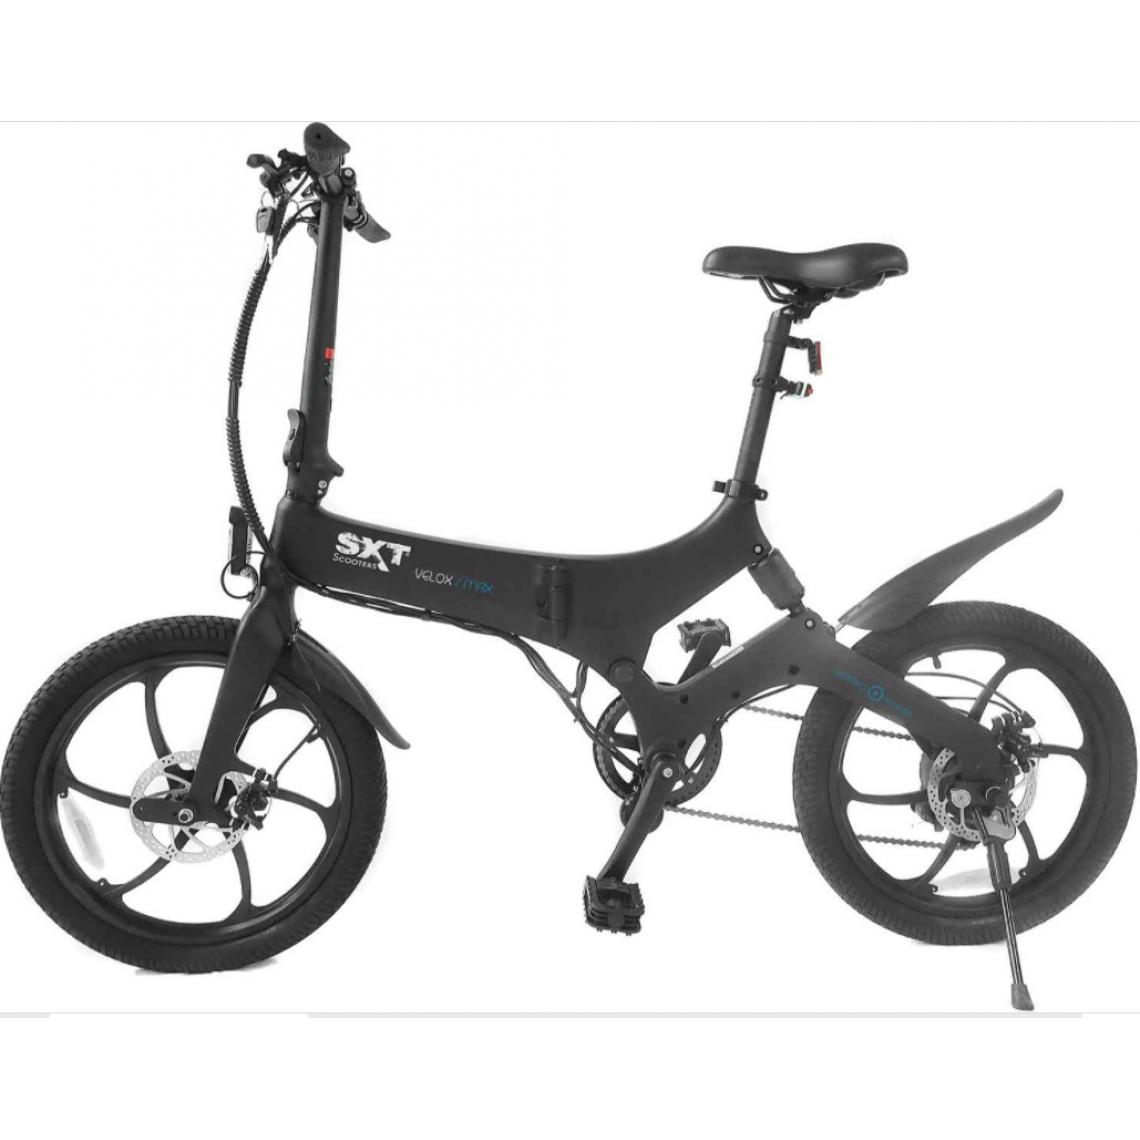 Sxt Scooter - Velo Electrique SXT Velox MAX Noir - Vélo électrique